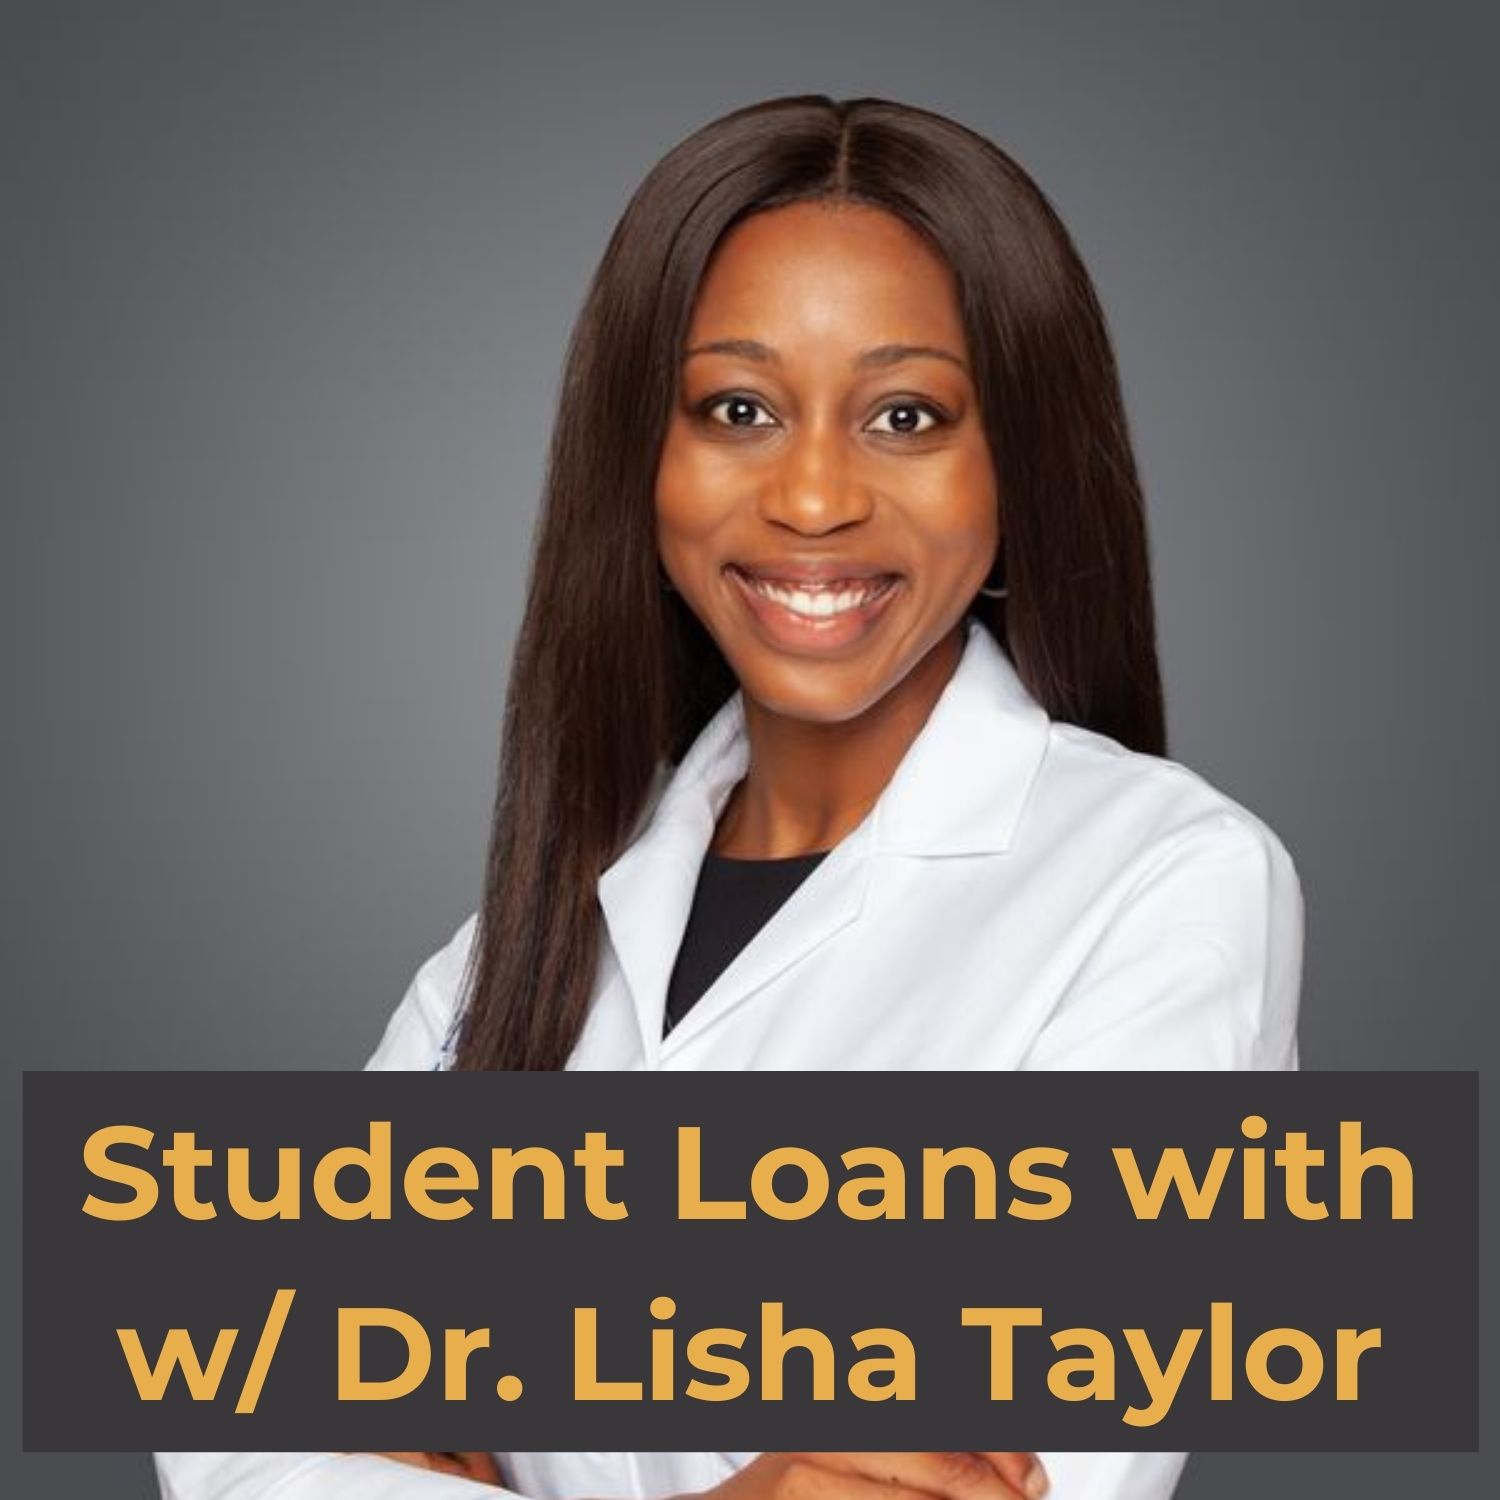 Dr. Lisha Taylor